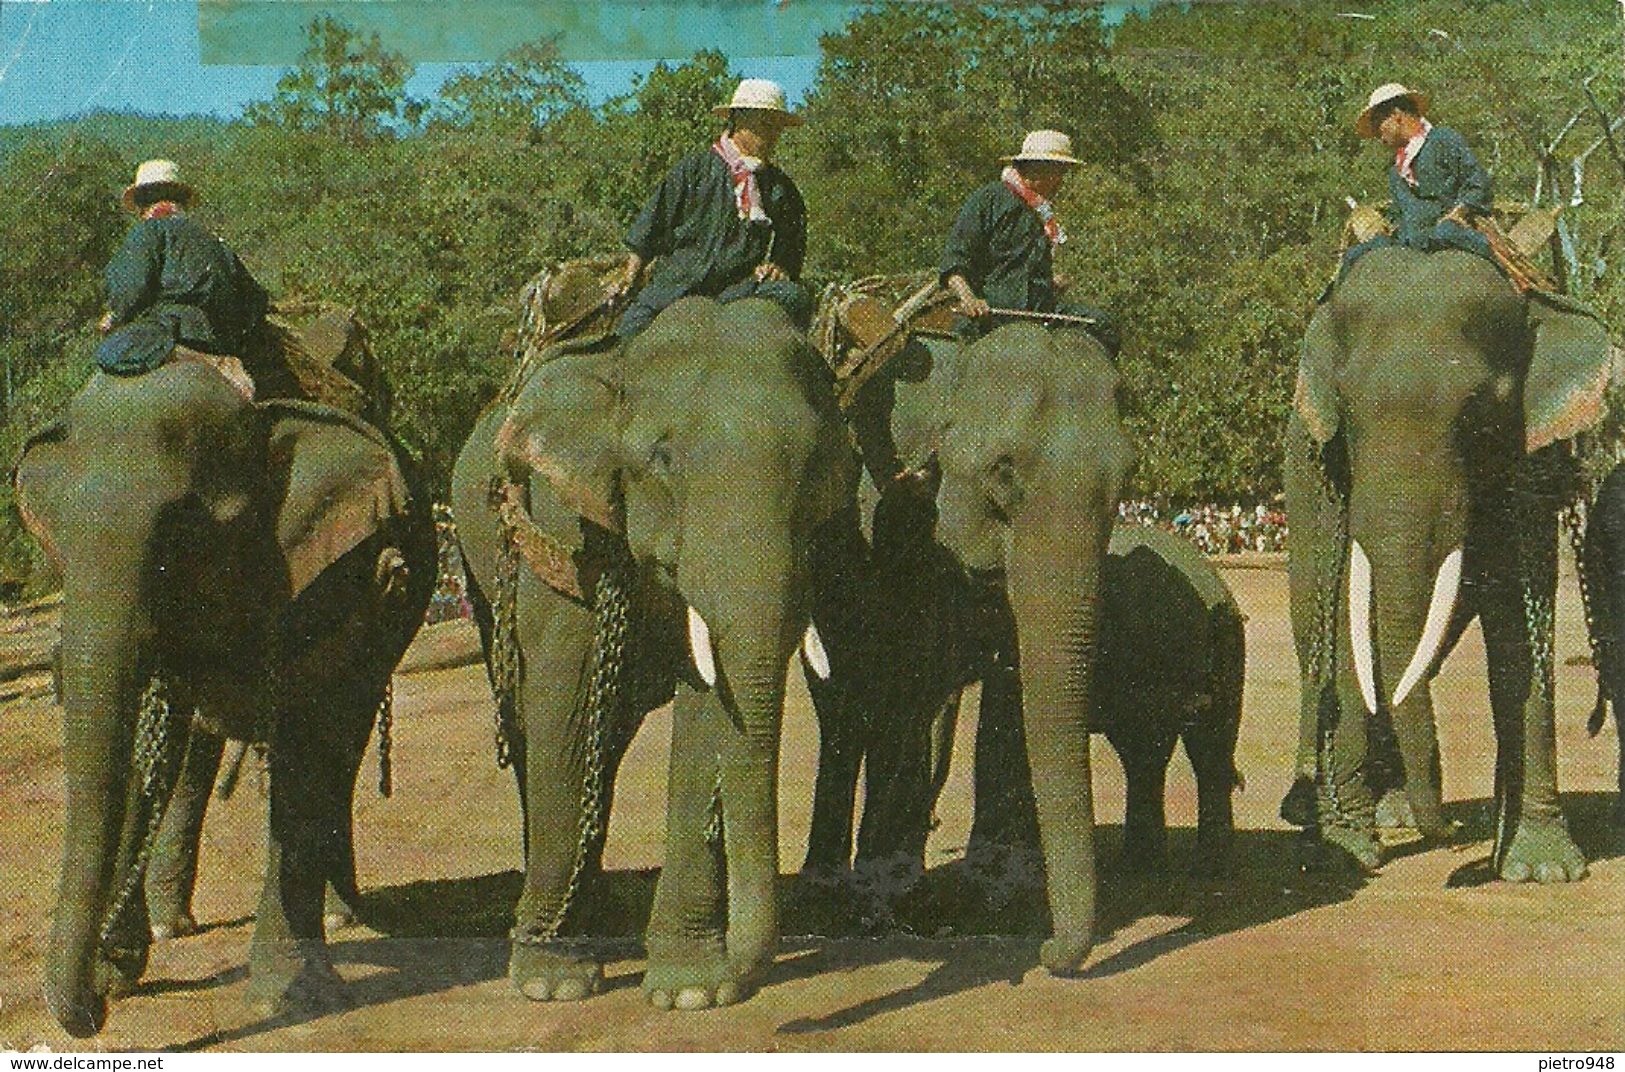 Thailandia (Thailand) Elefanti, Elephants Preparing For A Parade - Tailandia